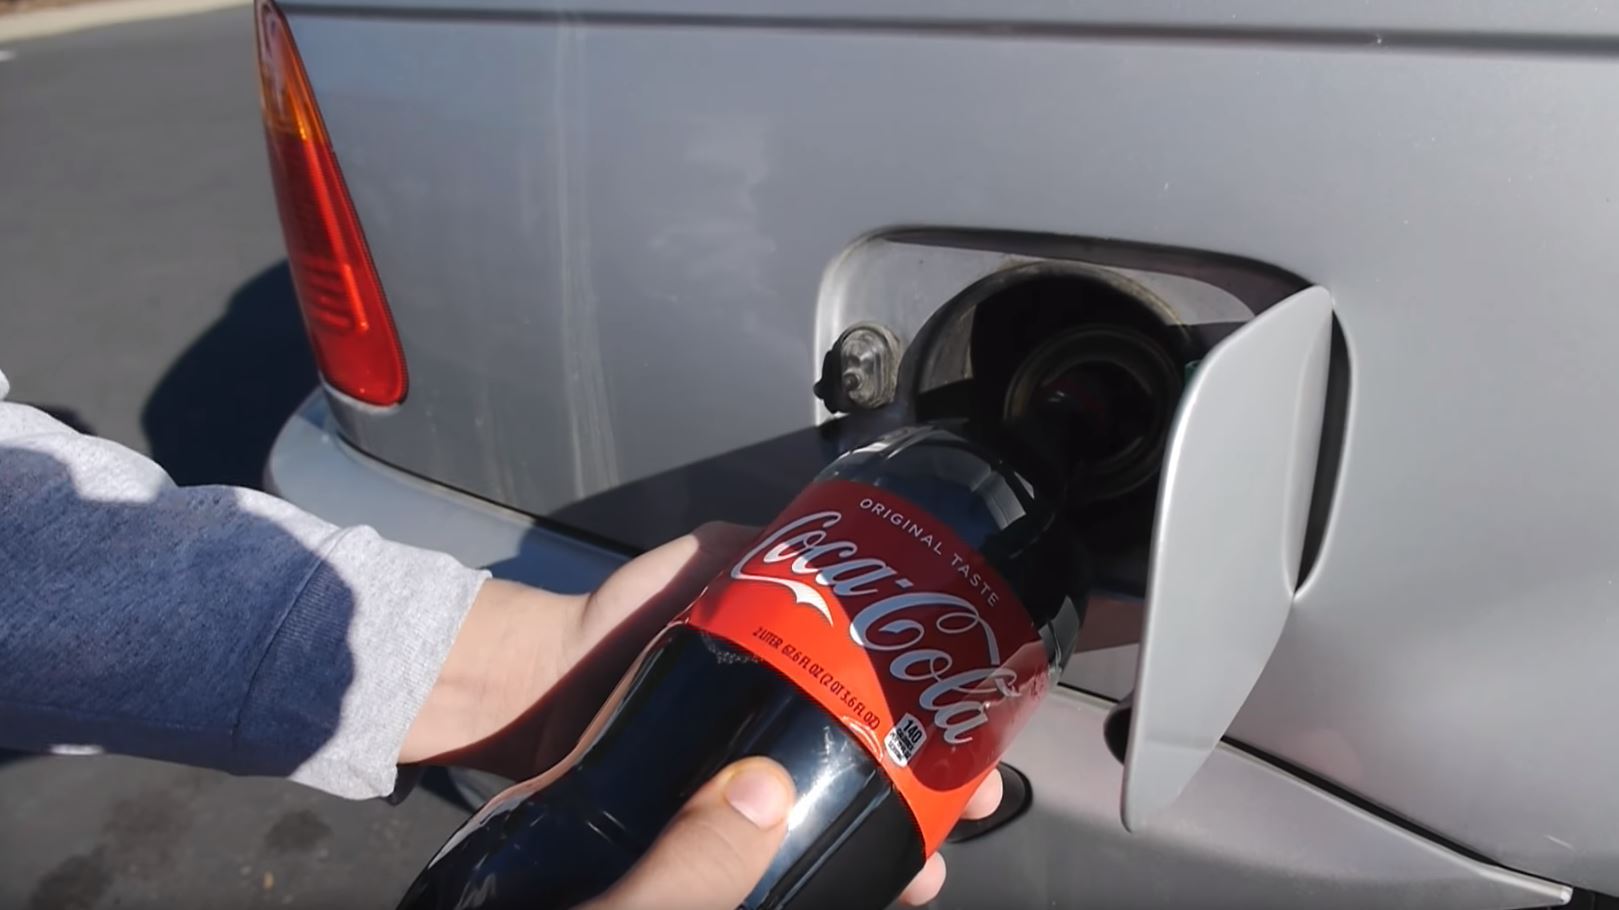 Τι γίνεται αν ρίξεις Coca-Cola στο ρεζερβουάρ ενός αυτοκινήτου (βίντεο)